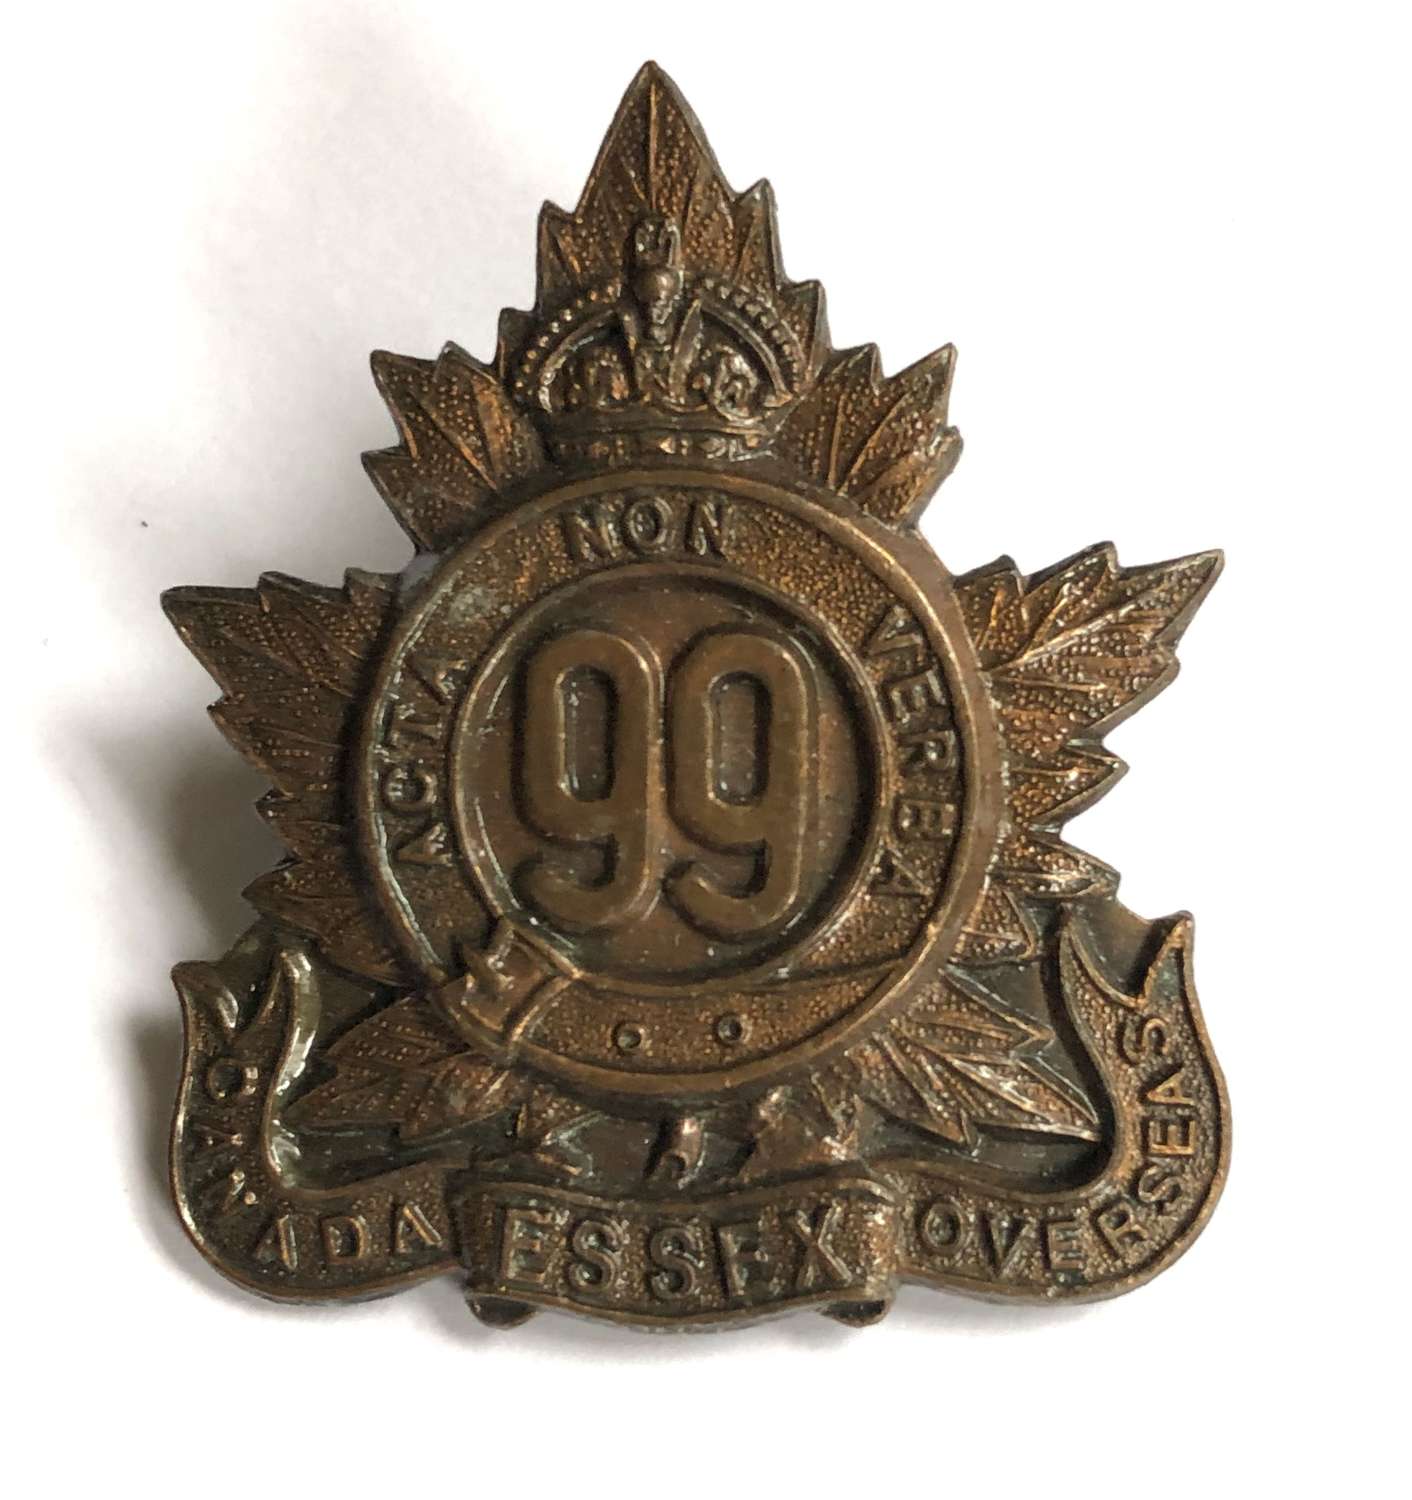 Canada. 99th (Essex) Bn CEF WWI cap badge